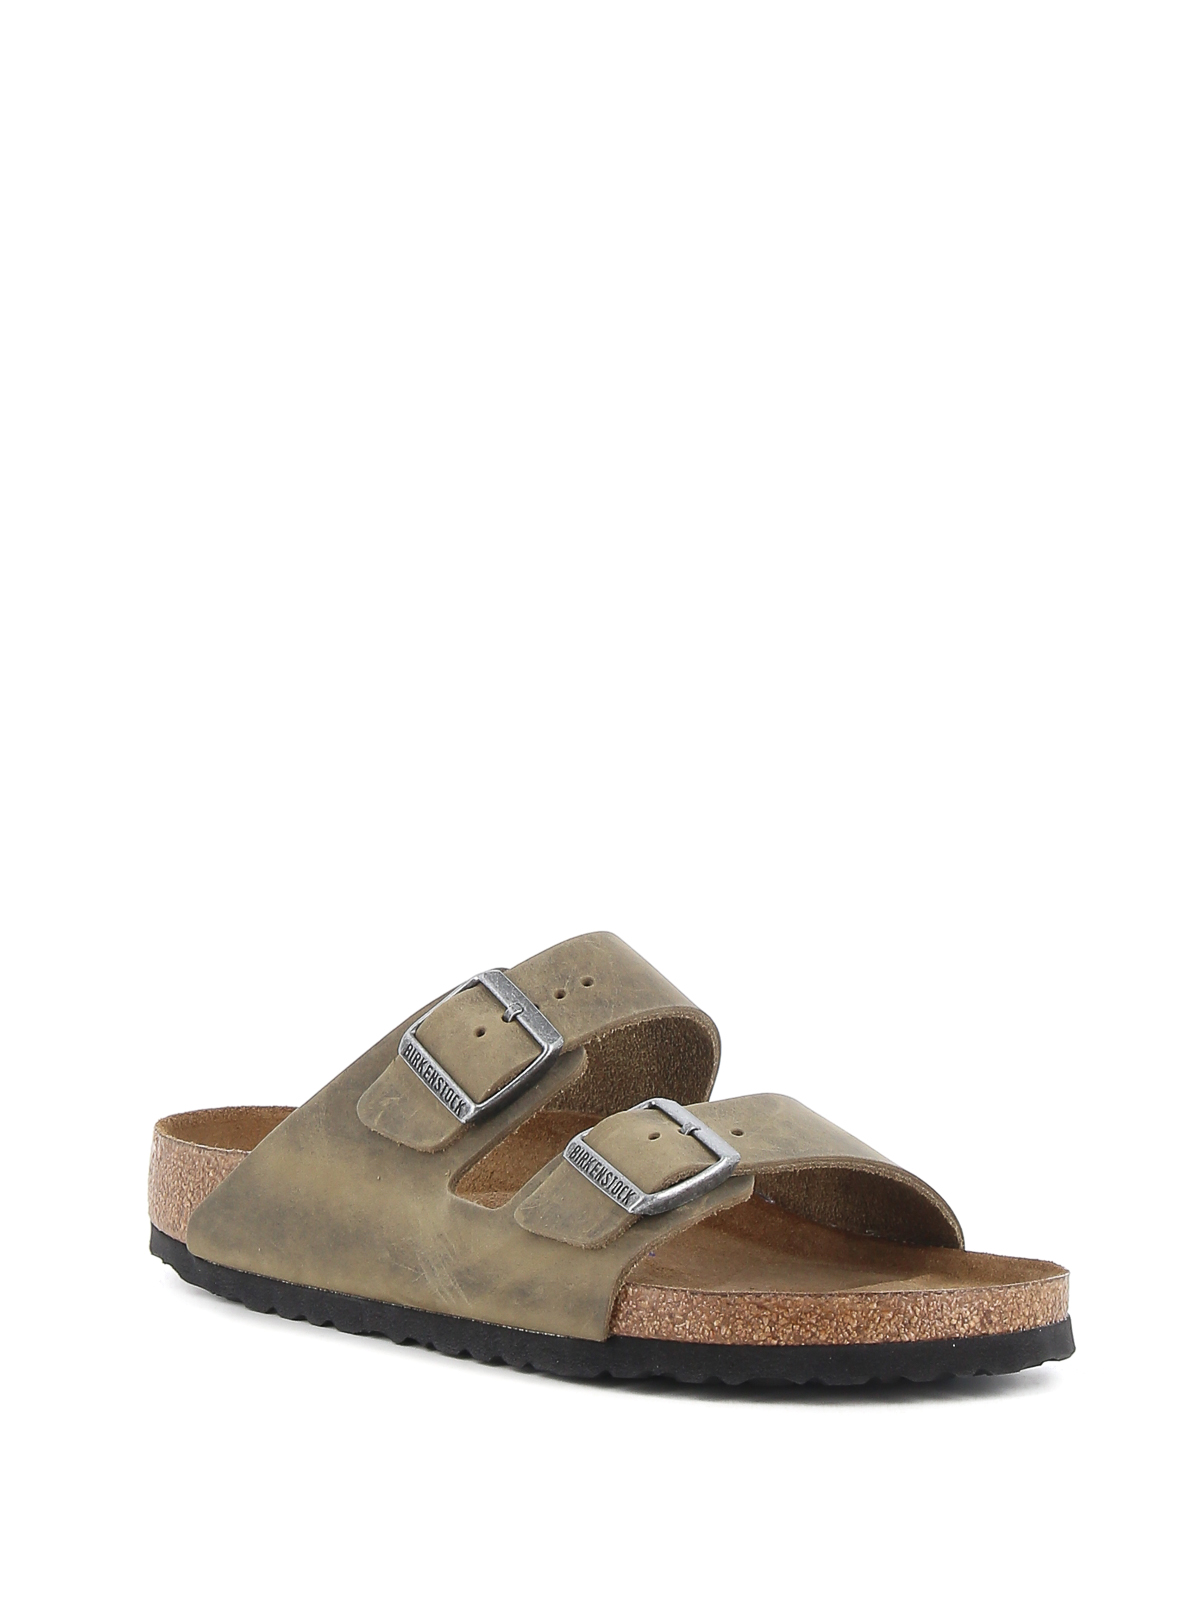 Kalmte omverwerping ras Sandals Birkenstock - Arizona Bs sandals - 1019377 | Shop online at iKRIX